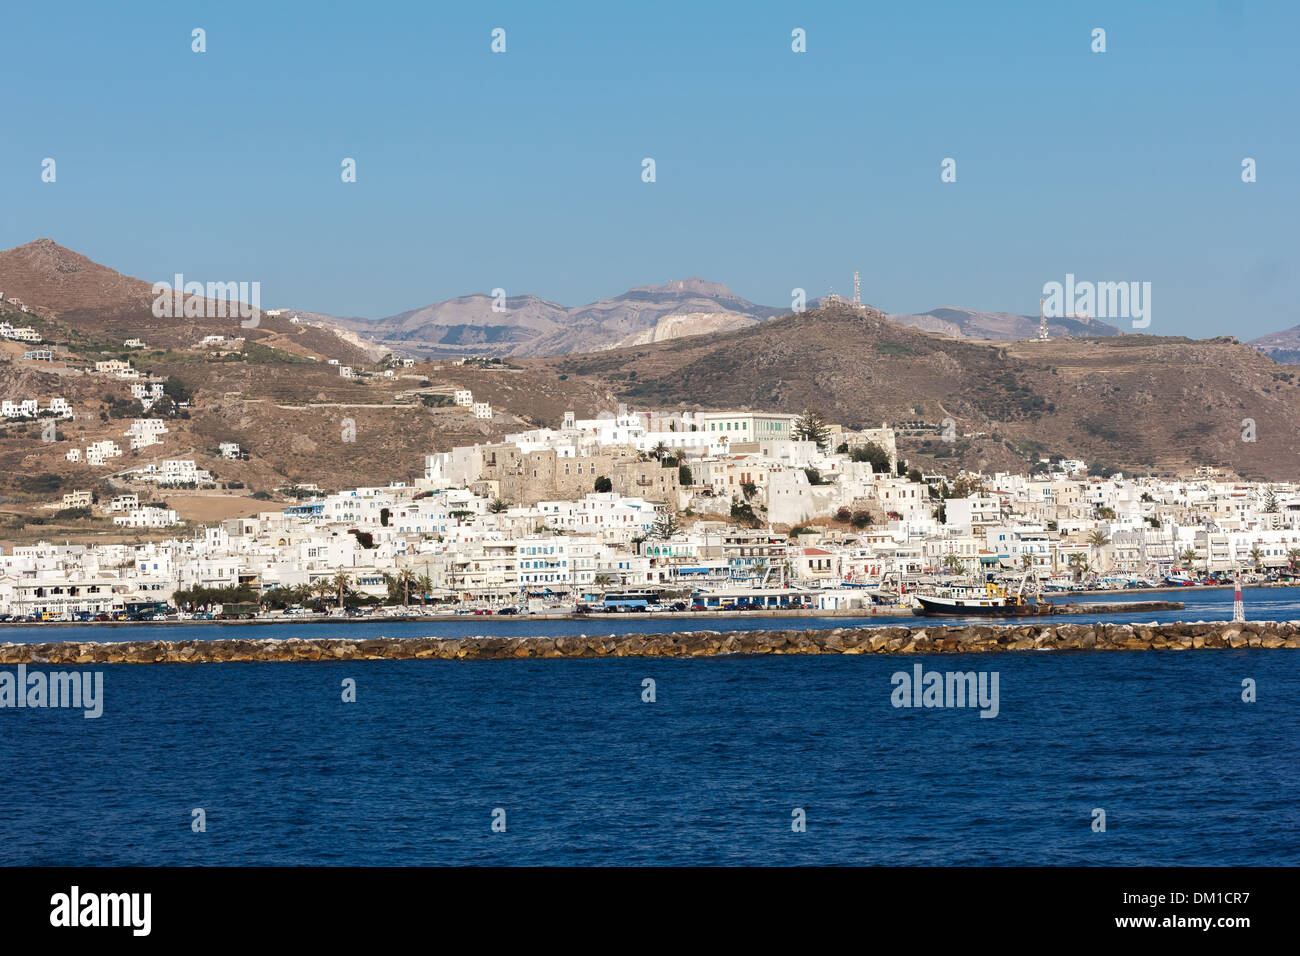 L'île de Naxos en Grèce avec de petits bateaux en face Banque D'Images